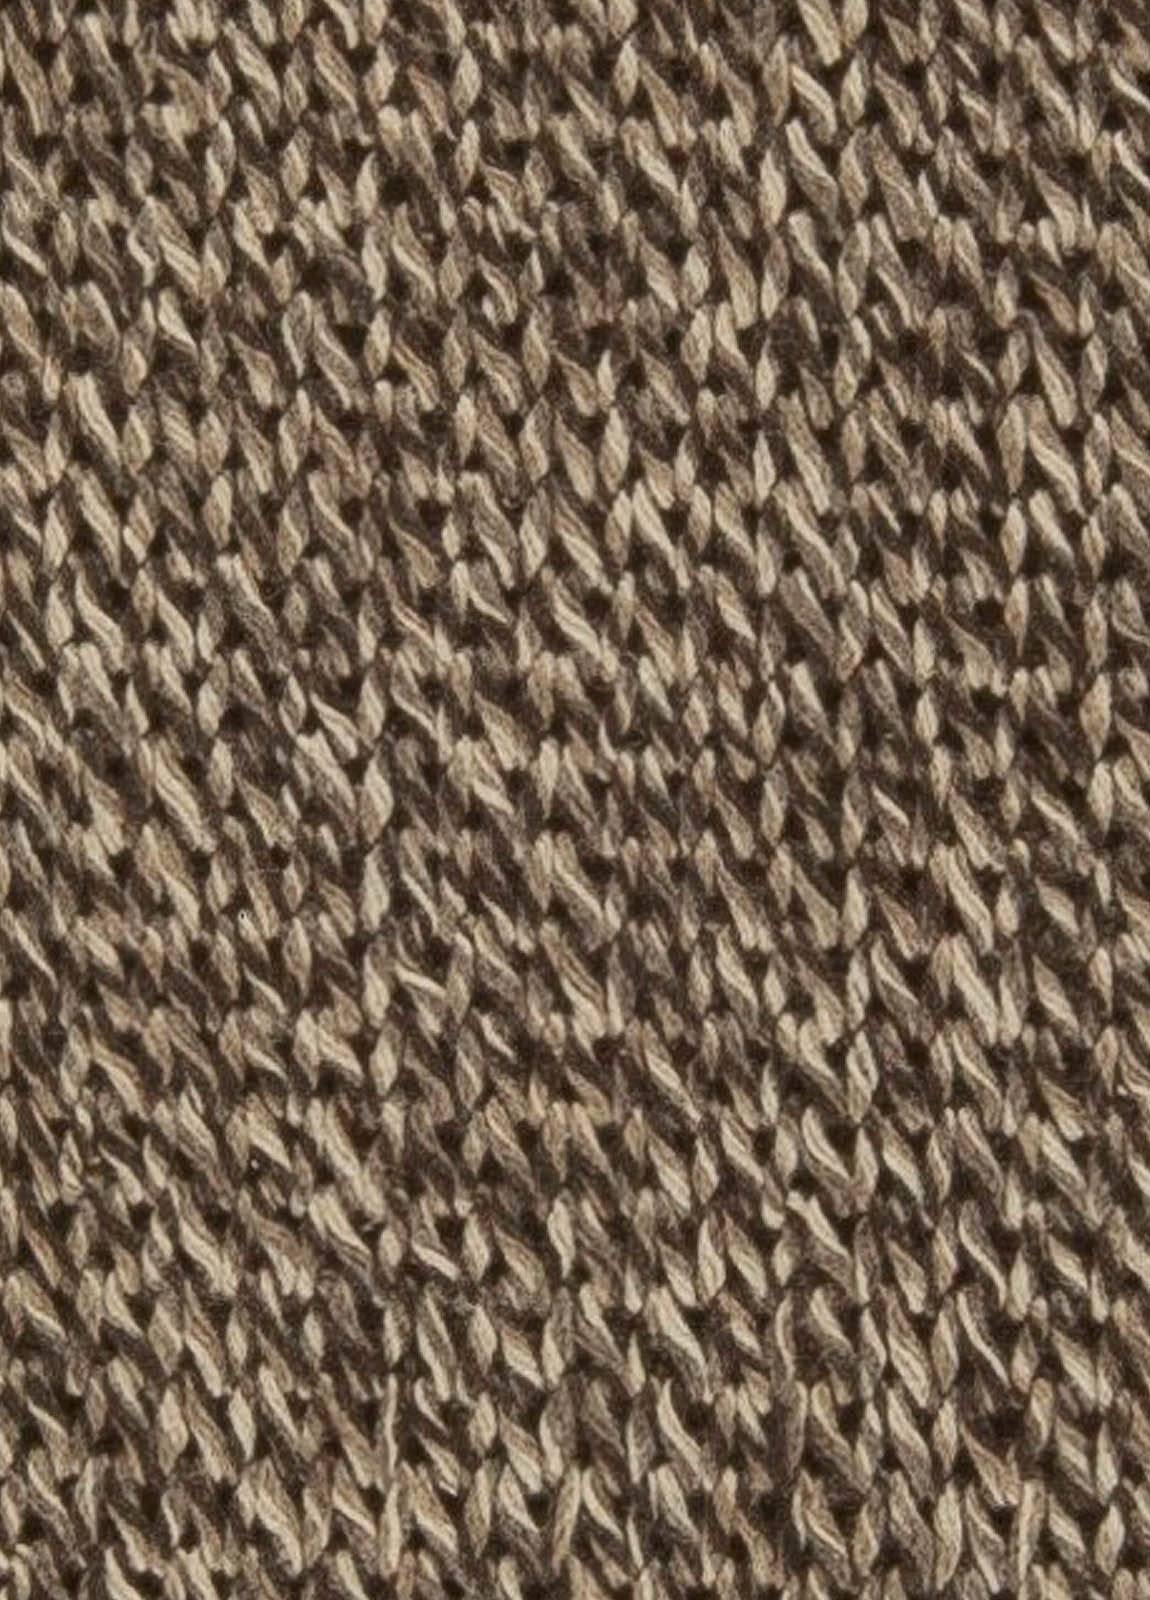 Modern brown and beige handmade wool Runner by Doris Leslie Blau
Size: 4'0